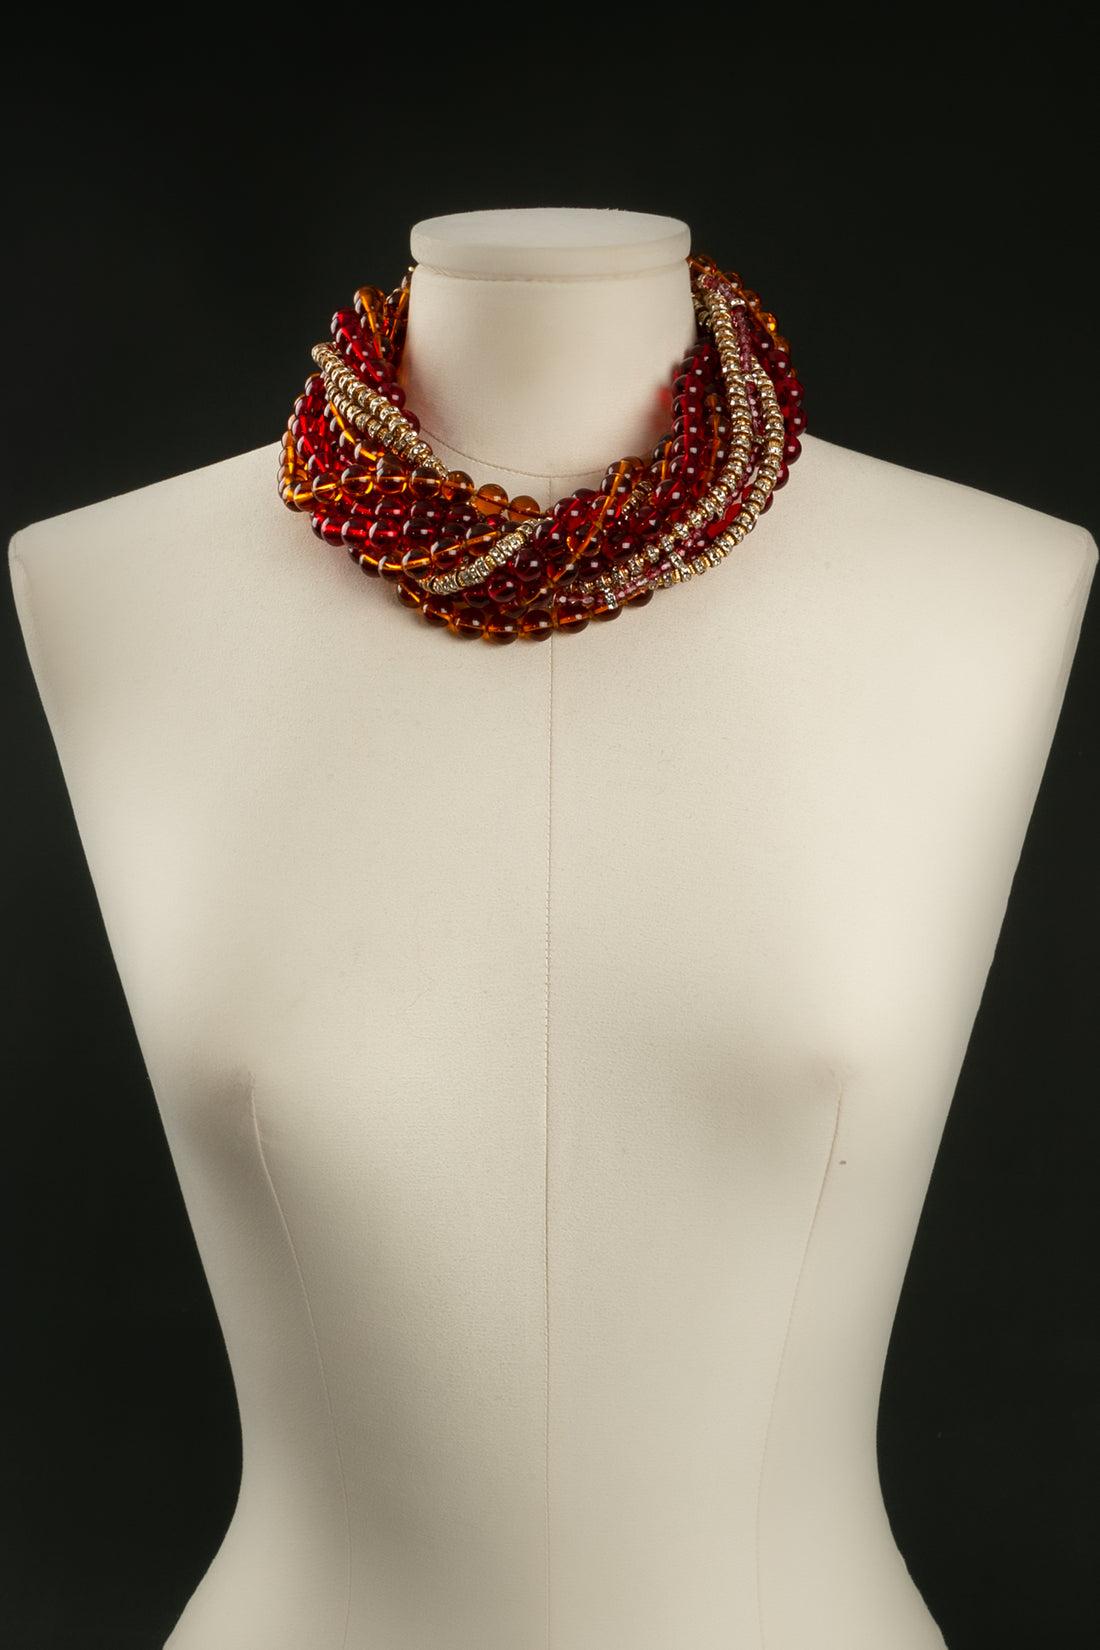 Christian Dior - Collier court en métal doré composé de perles en pâte de verre dans les tons rouge et orange avec des entretoises. Le fermoir est en métal doré ajouré et pavé de strass.

Informations complémentaires : 

Dimensions : 
Longueur : 45